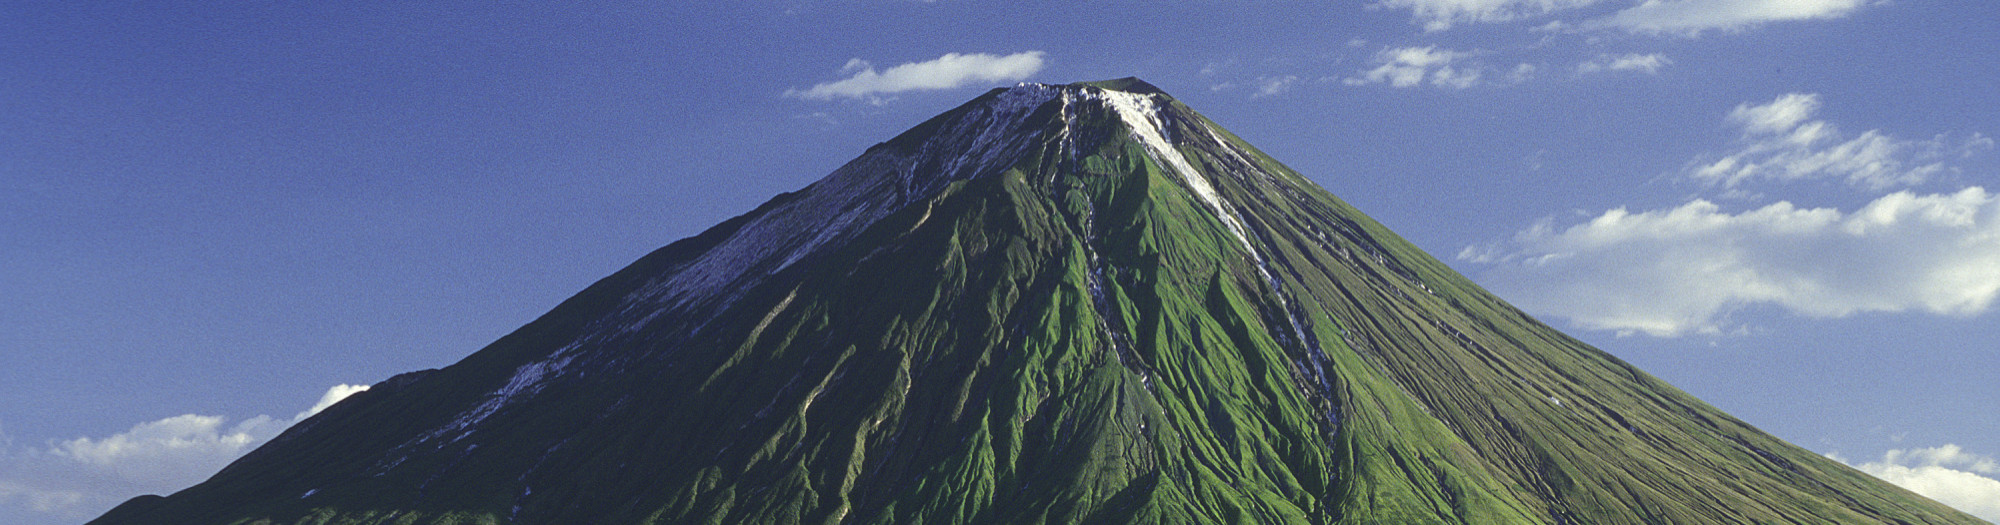 Masai mountain Ol Doinyo Lengai